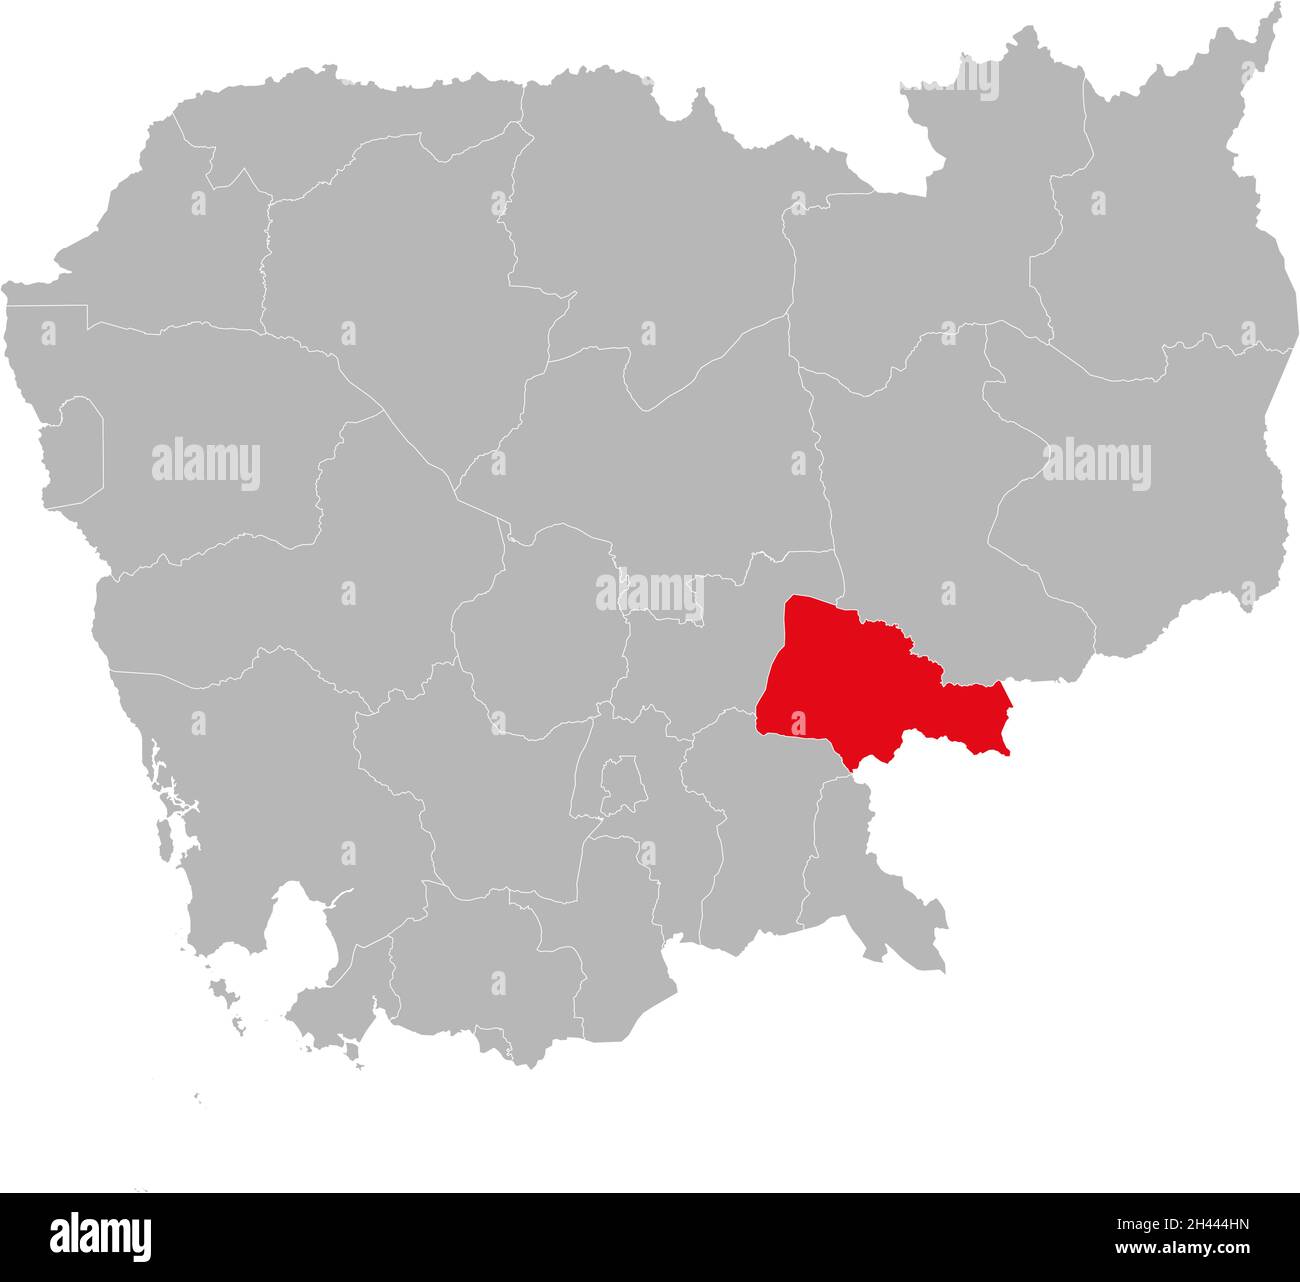 Isolierte kambodschanische Landkarte der Provinz Tboung Khmum. Grauer Hintergrund. Geschäftskonzepte und -Hintergründe. Stock Vektor